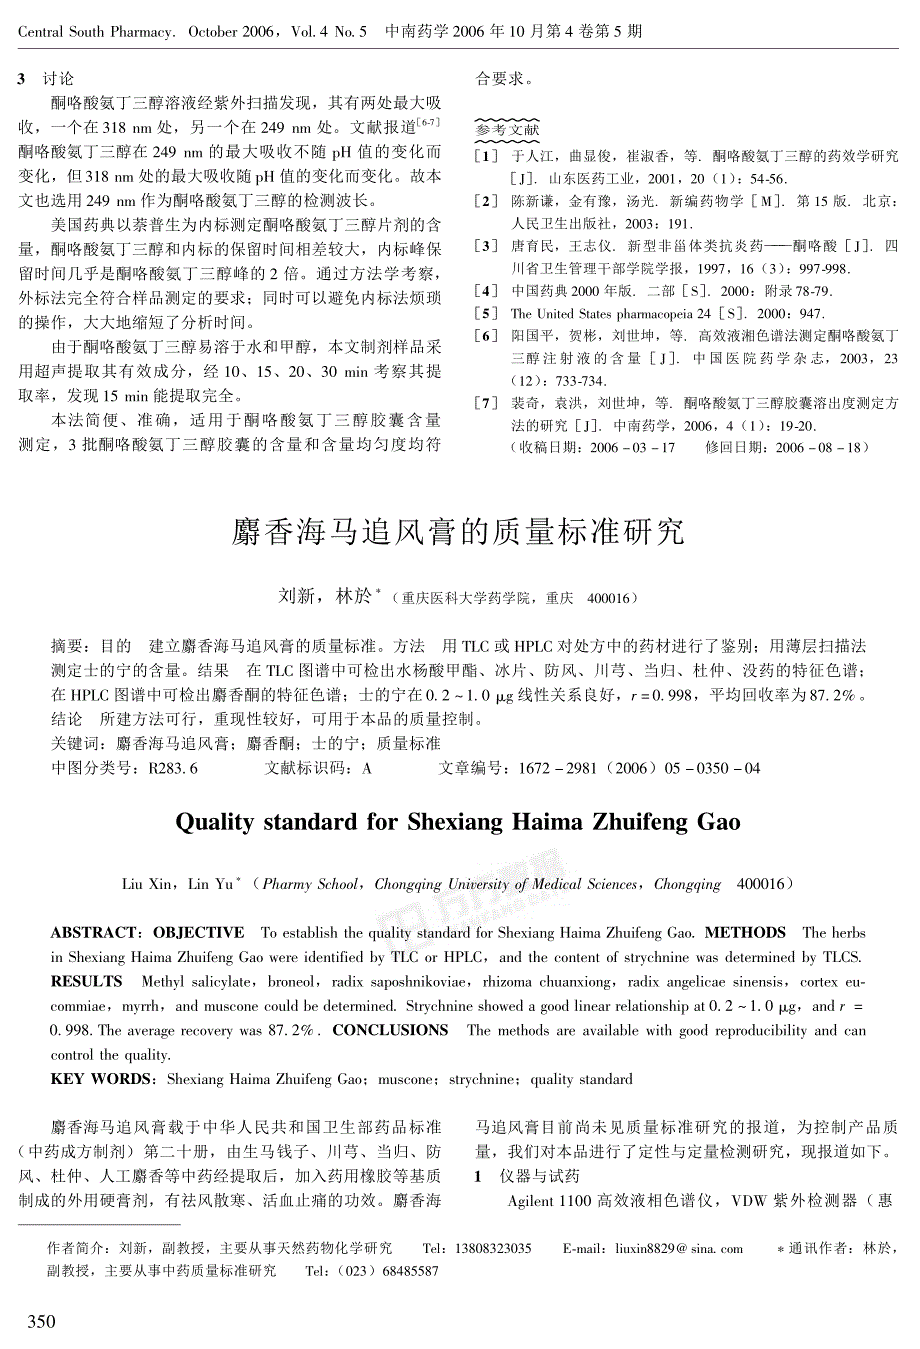 麝香海马追风膏的质量标准研究_第1页